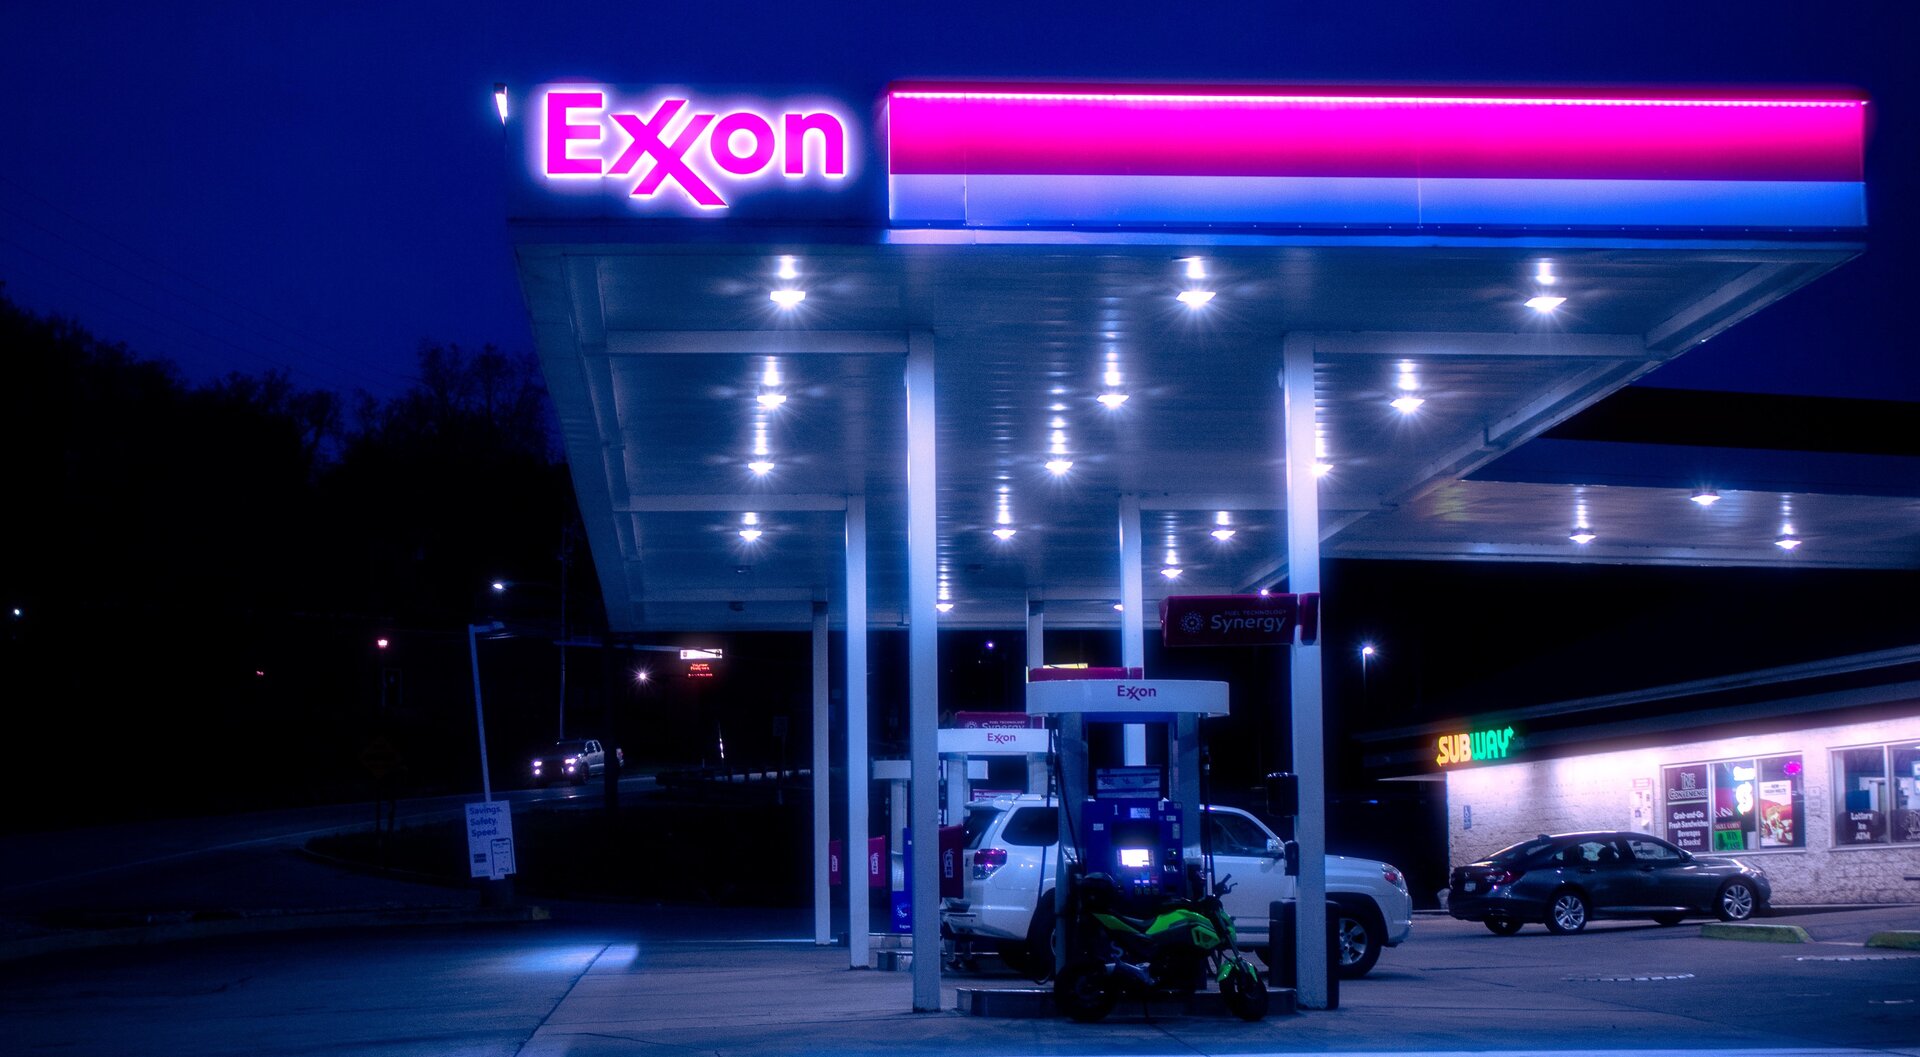 ExxonMobil’in Kârı Düştü ama Yatırımlara Devam Ediyor